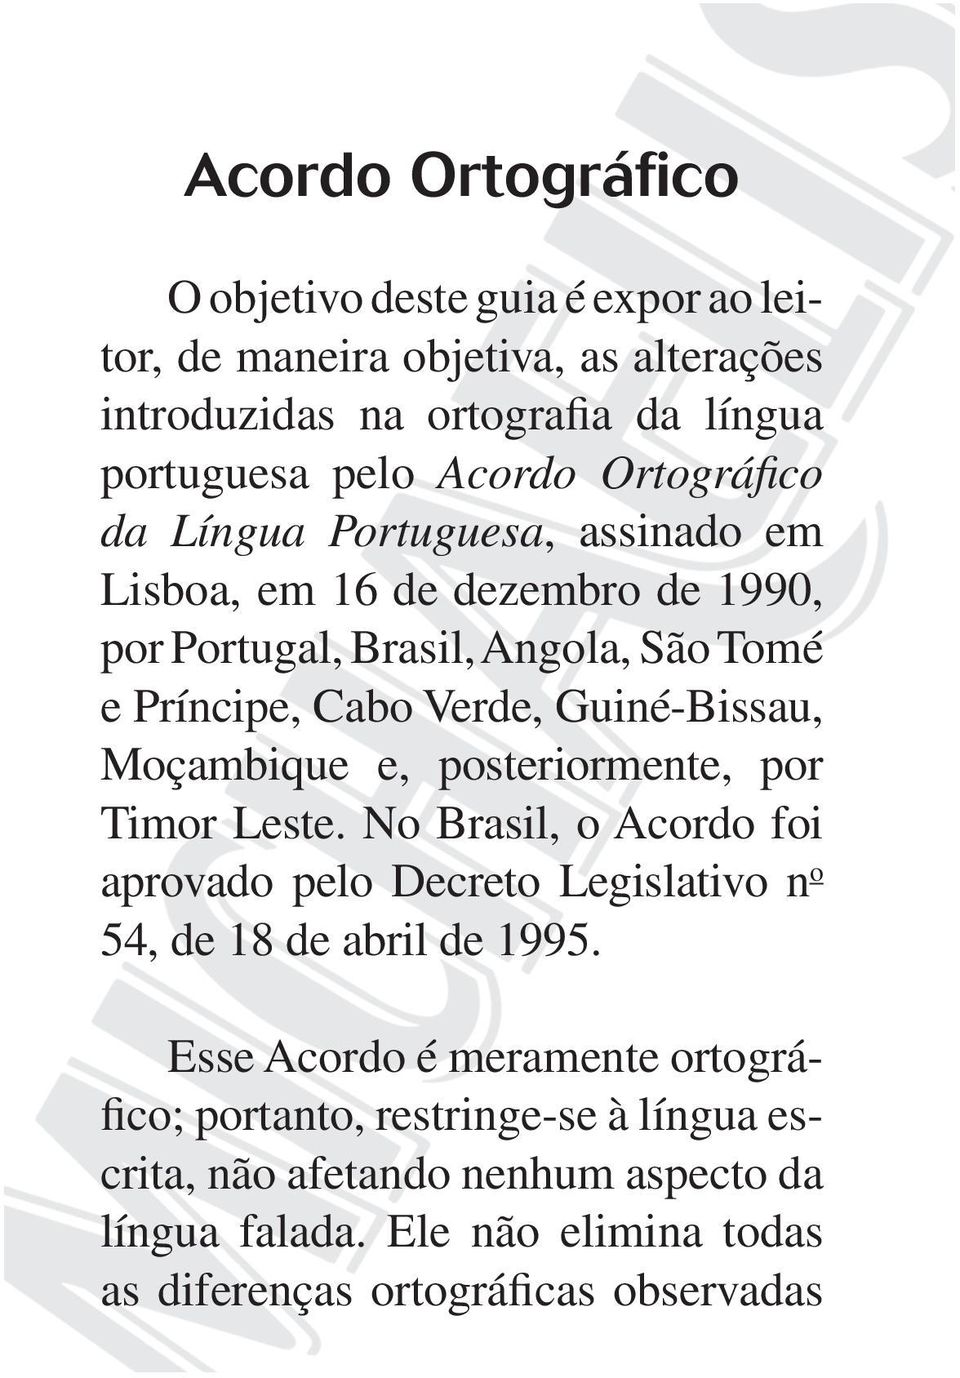 Moçambique e, posteriormente, por Timor Leste. No Brasil, o Acordo foi aprovado pelo Decreto Legislativo n o 54, de 18 de abril de 1995.